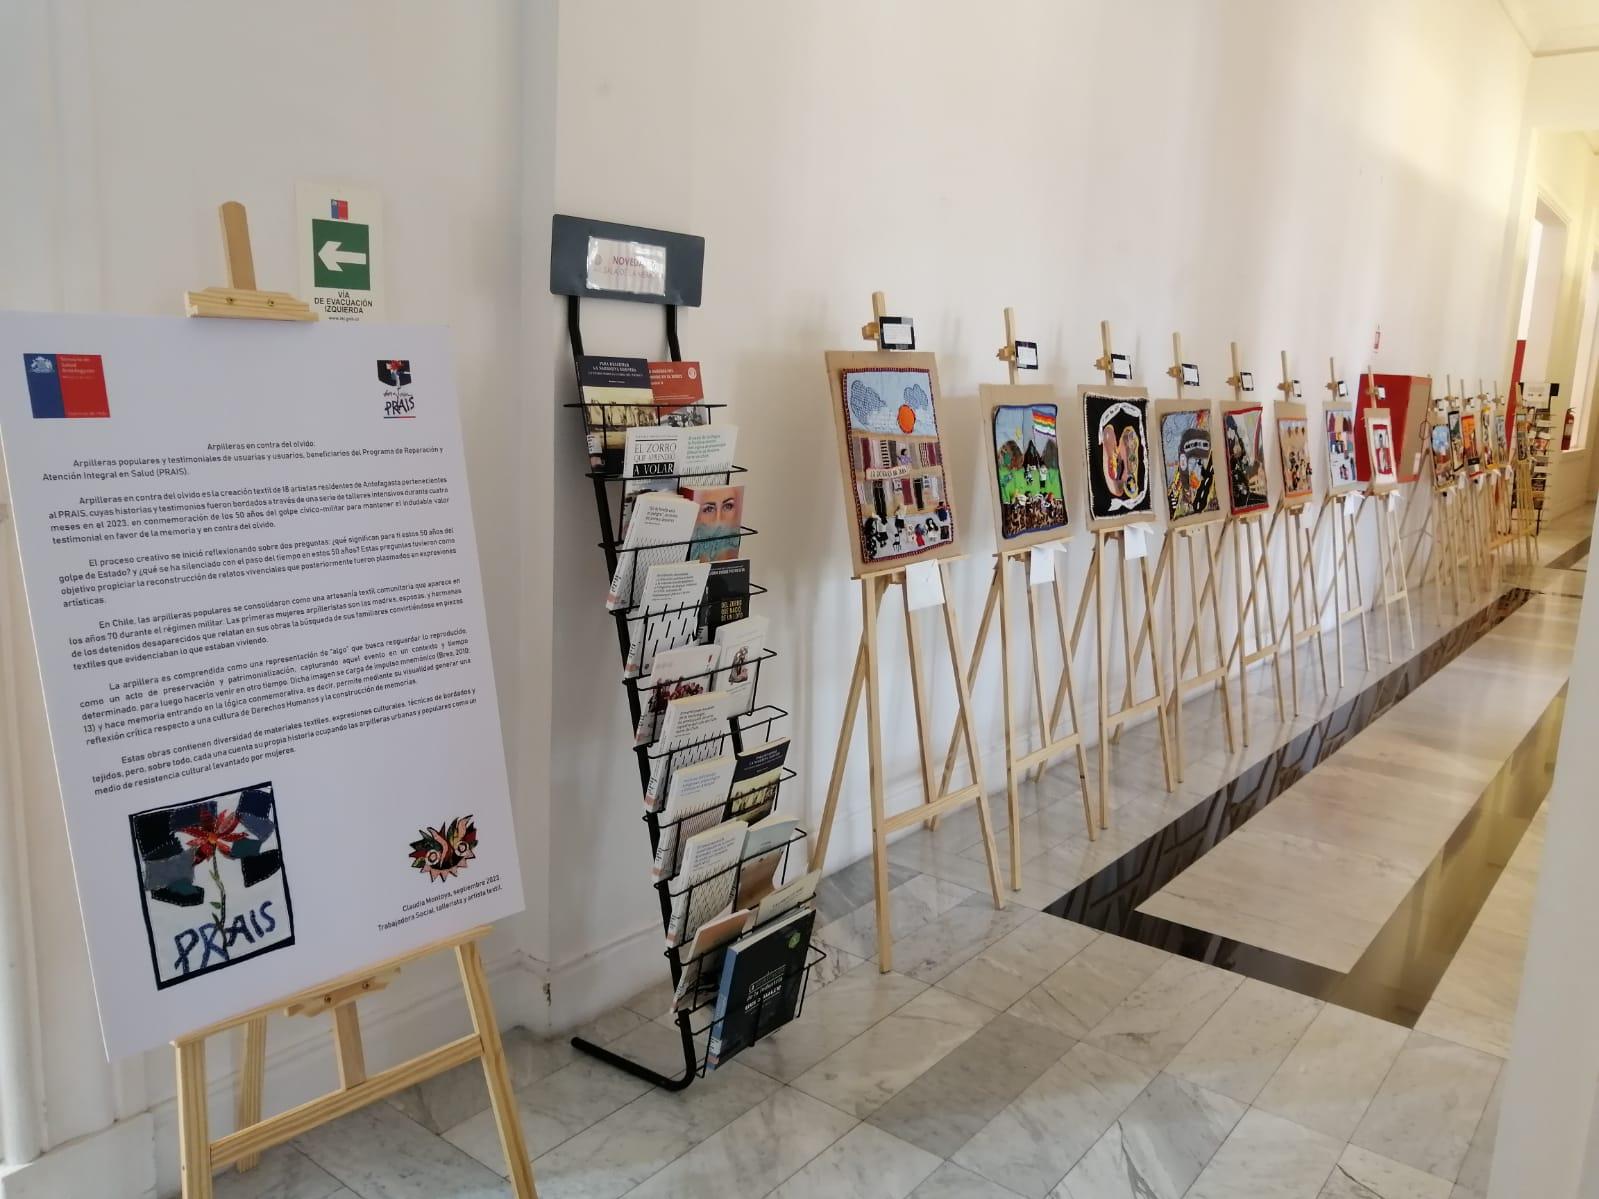 Presentación de la exposición con atriles y arpilleras en segundo piso de la biblioteca